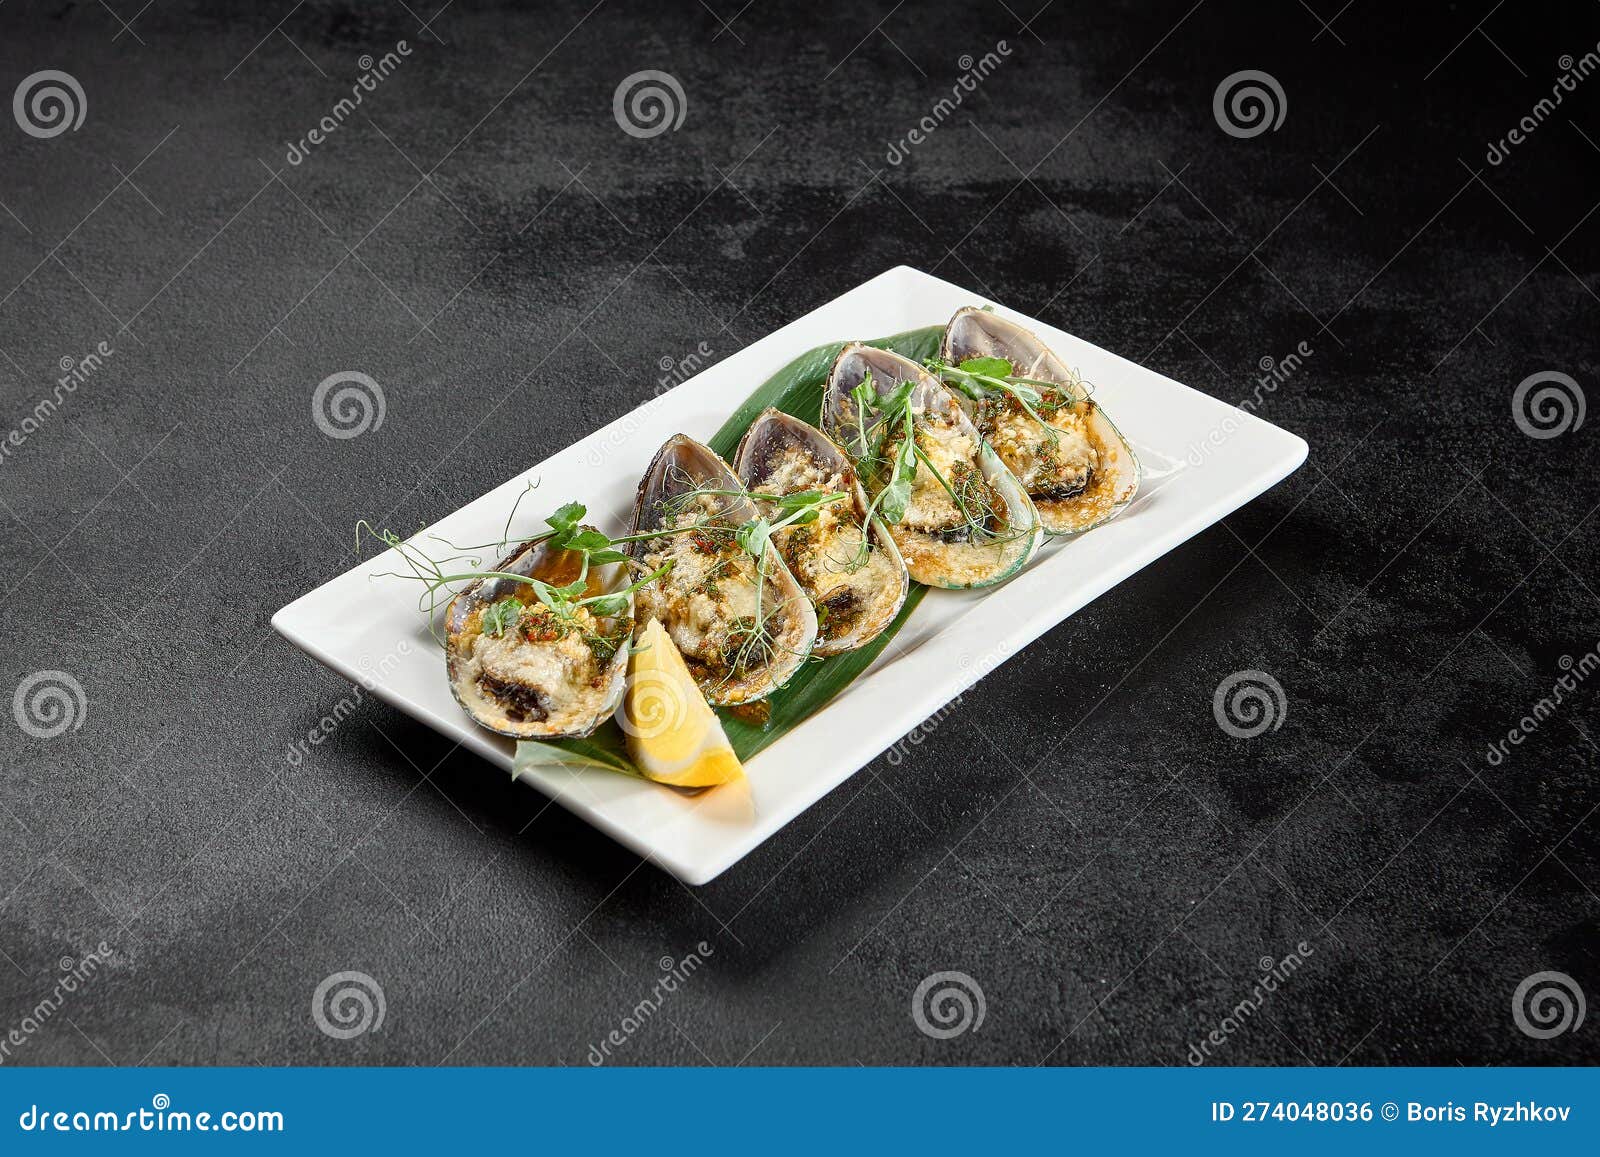 人人都能烤出超美味的蛤蜊、贻贝和牡蛎 - 知乎